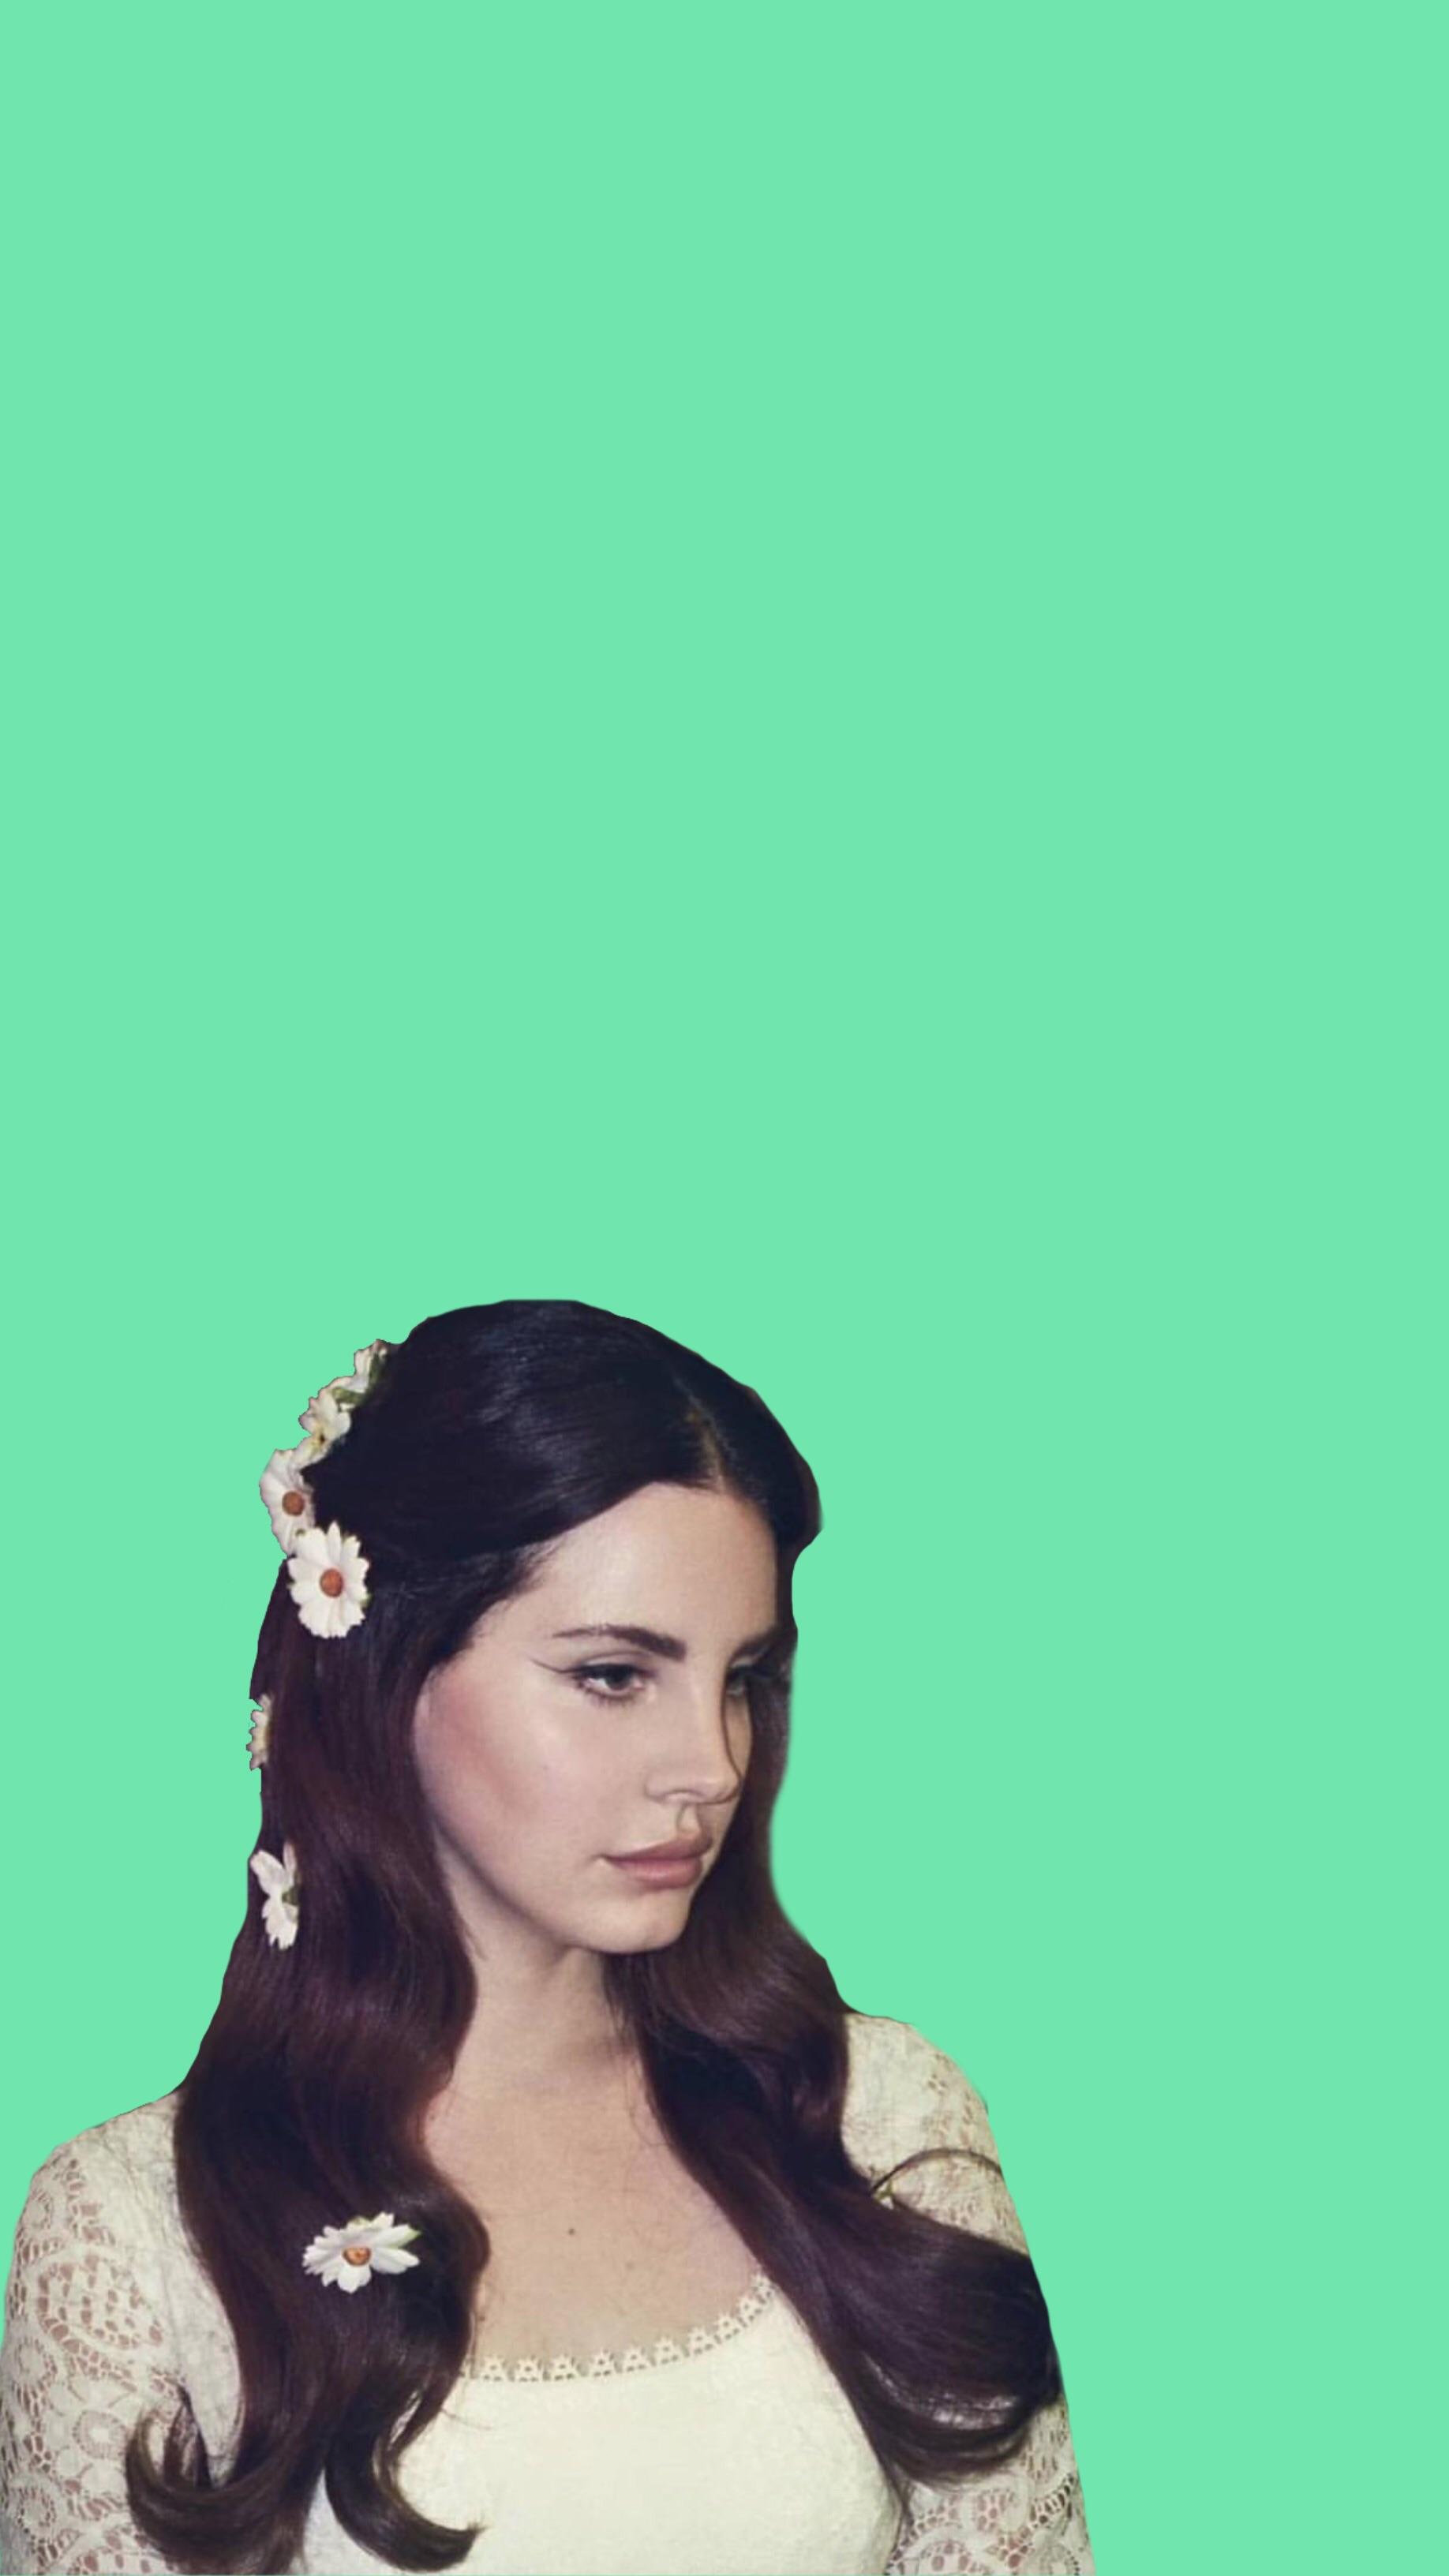 Lana Del Rey Iphone Wallpapers